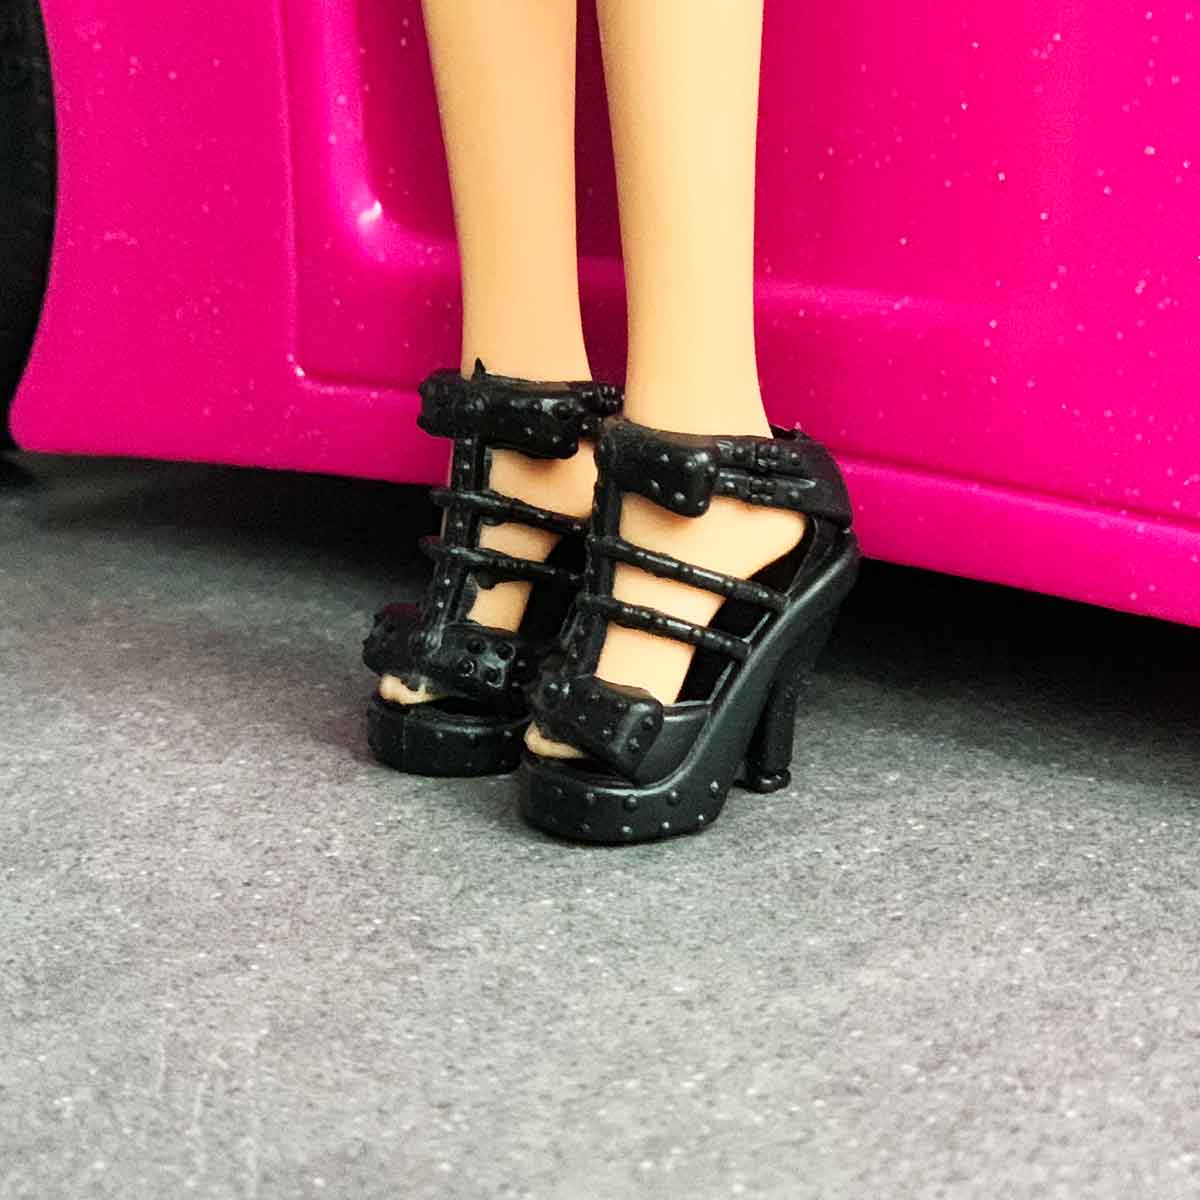 Barbie schoenen zwarte pumps met riemen van spikkelmotief